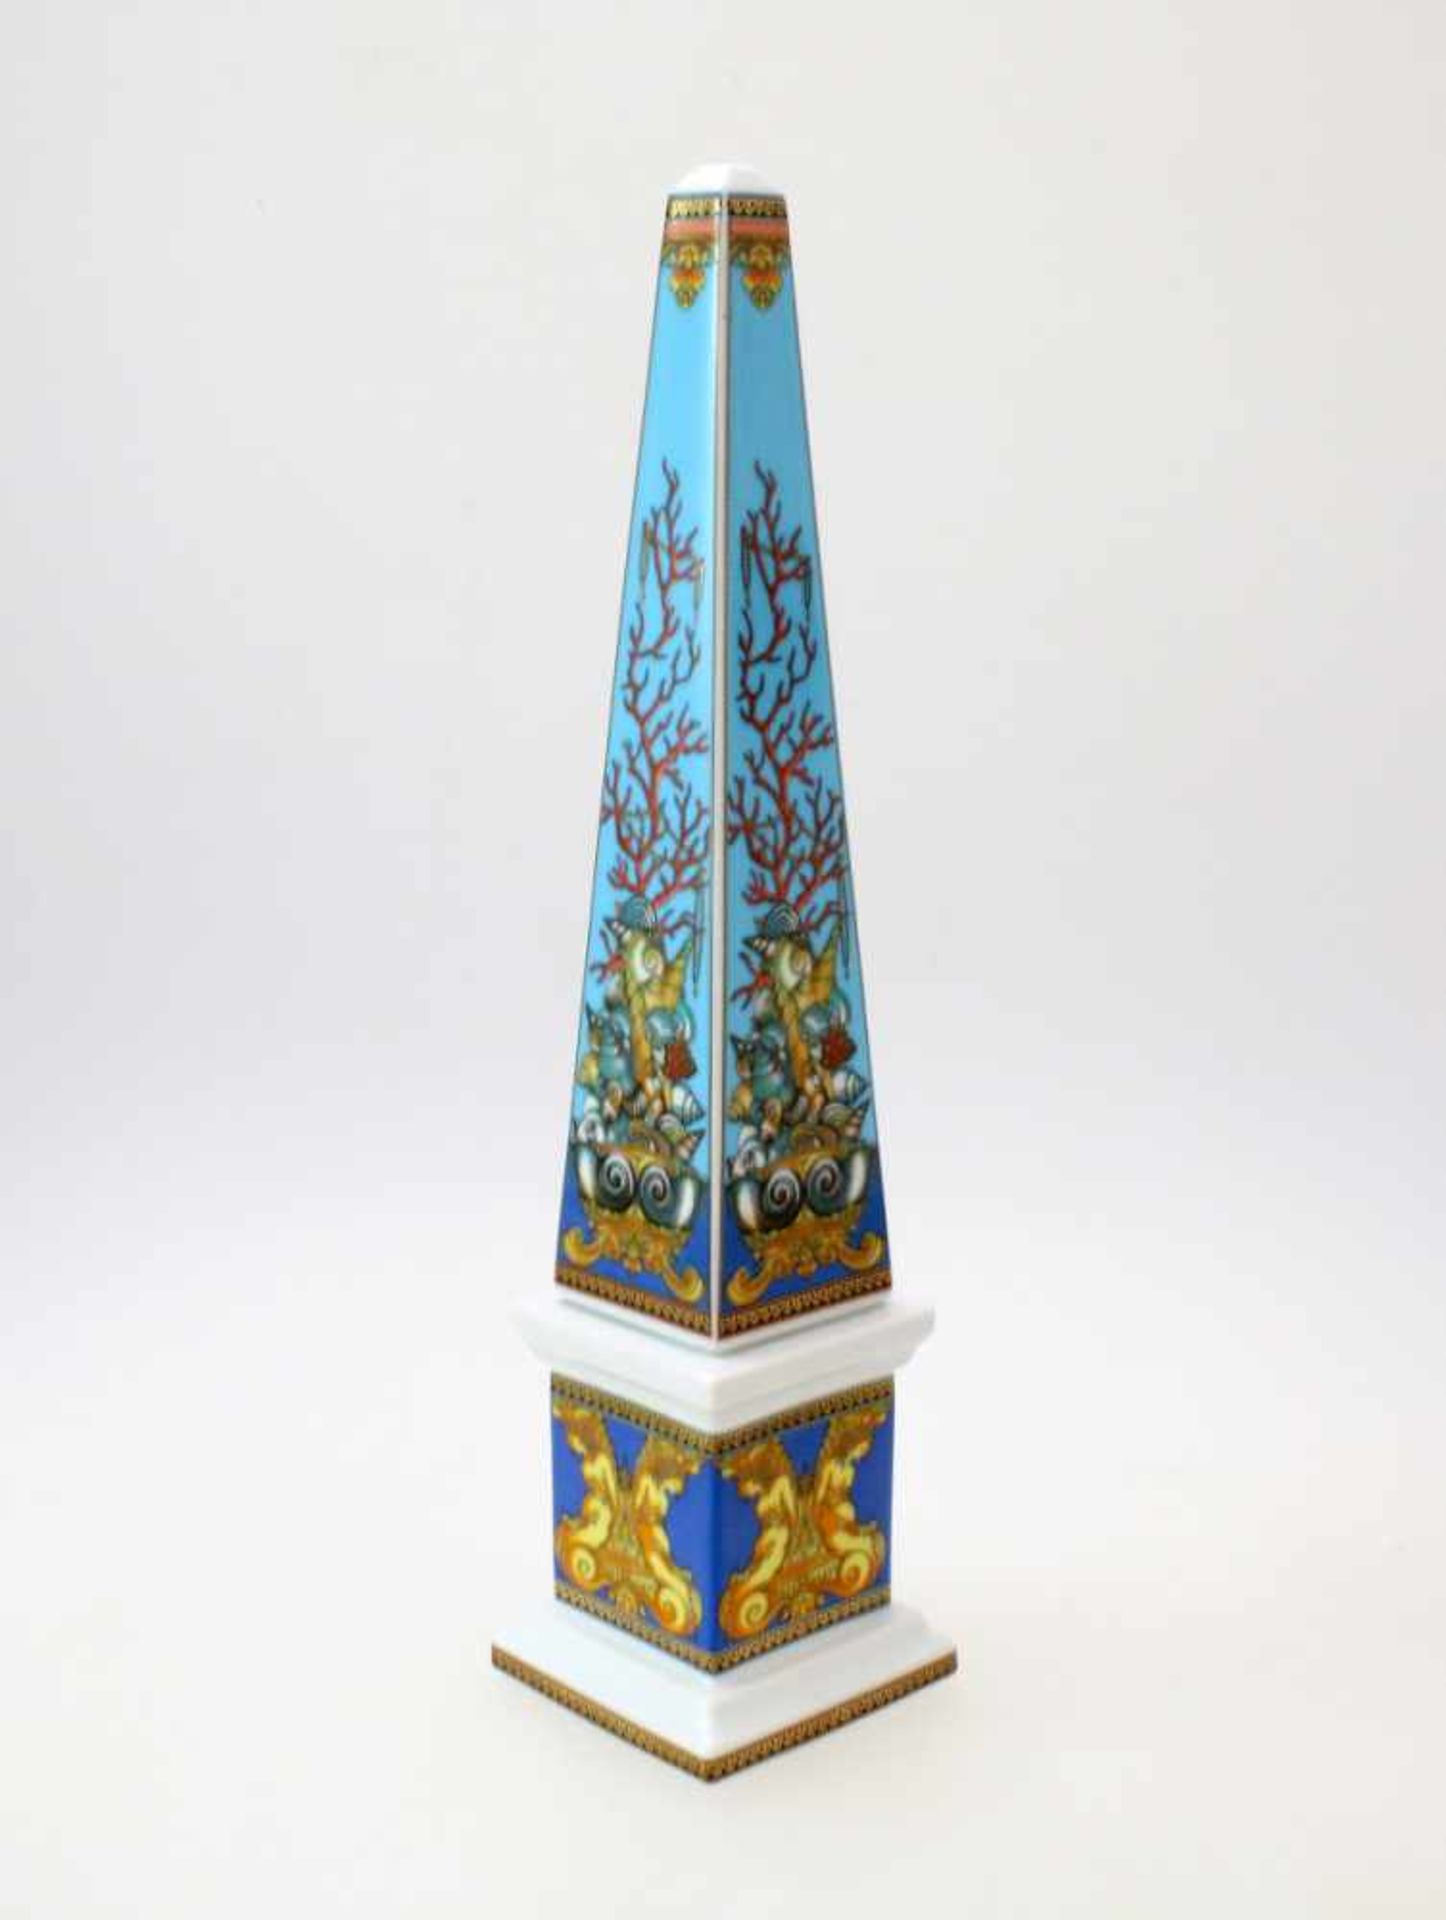 Rosenthal Obelisk - Gianni Versace Serie "Les Tresors de la Mer", Modellnr. 4096/2, Vitrinenstück.